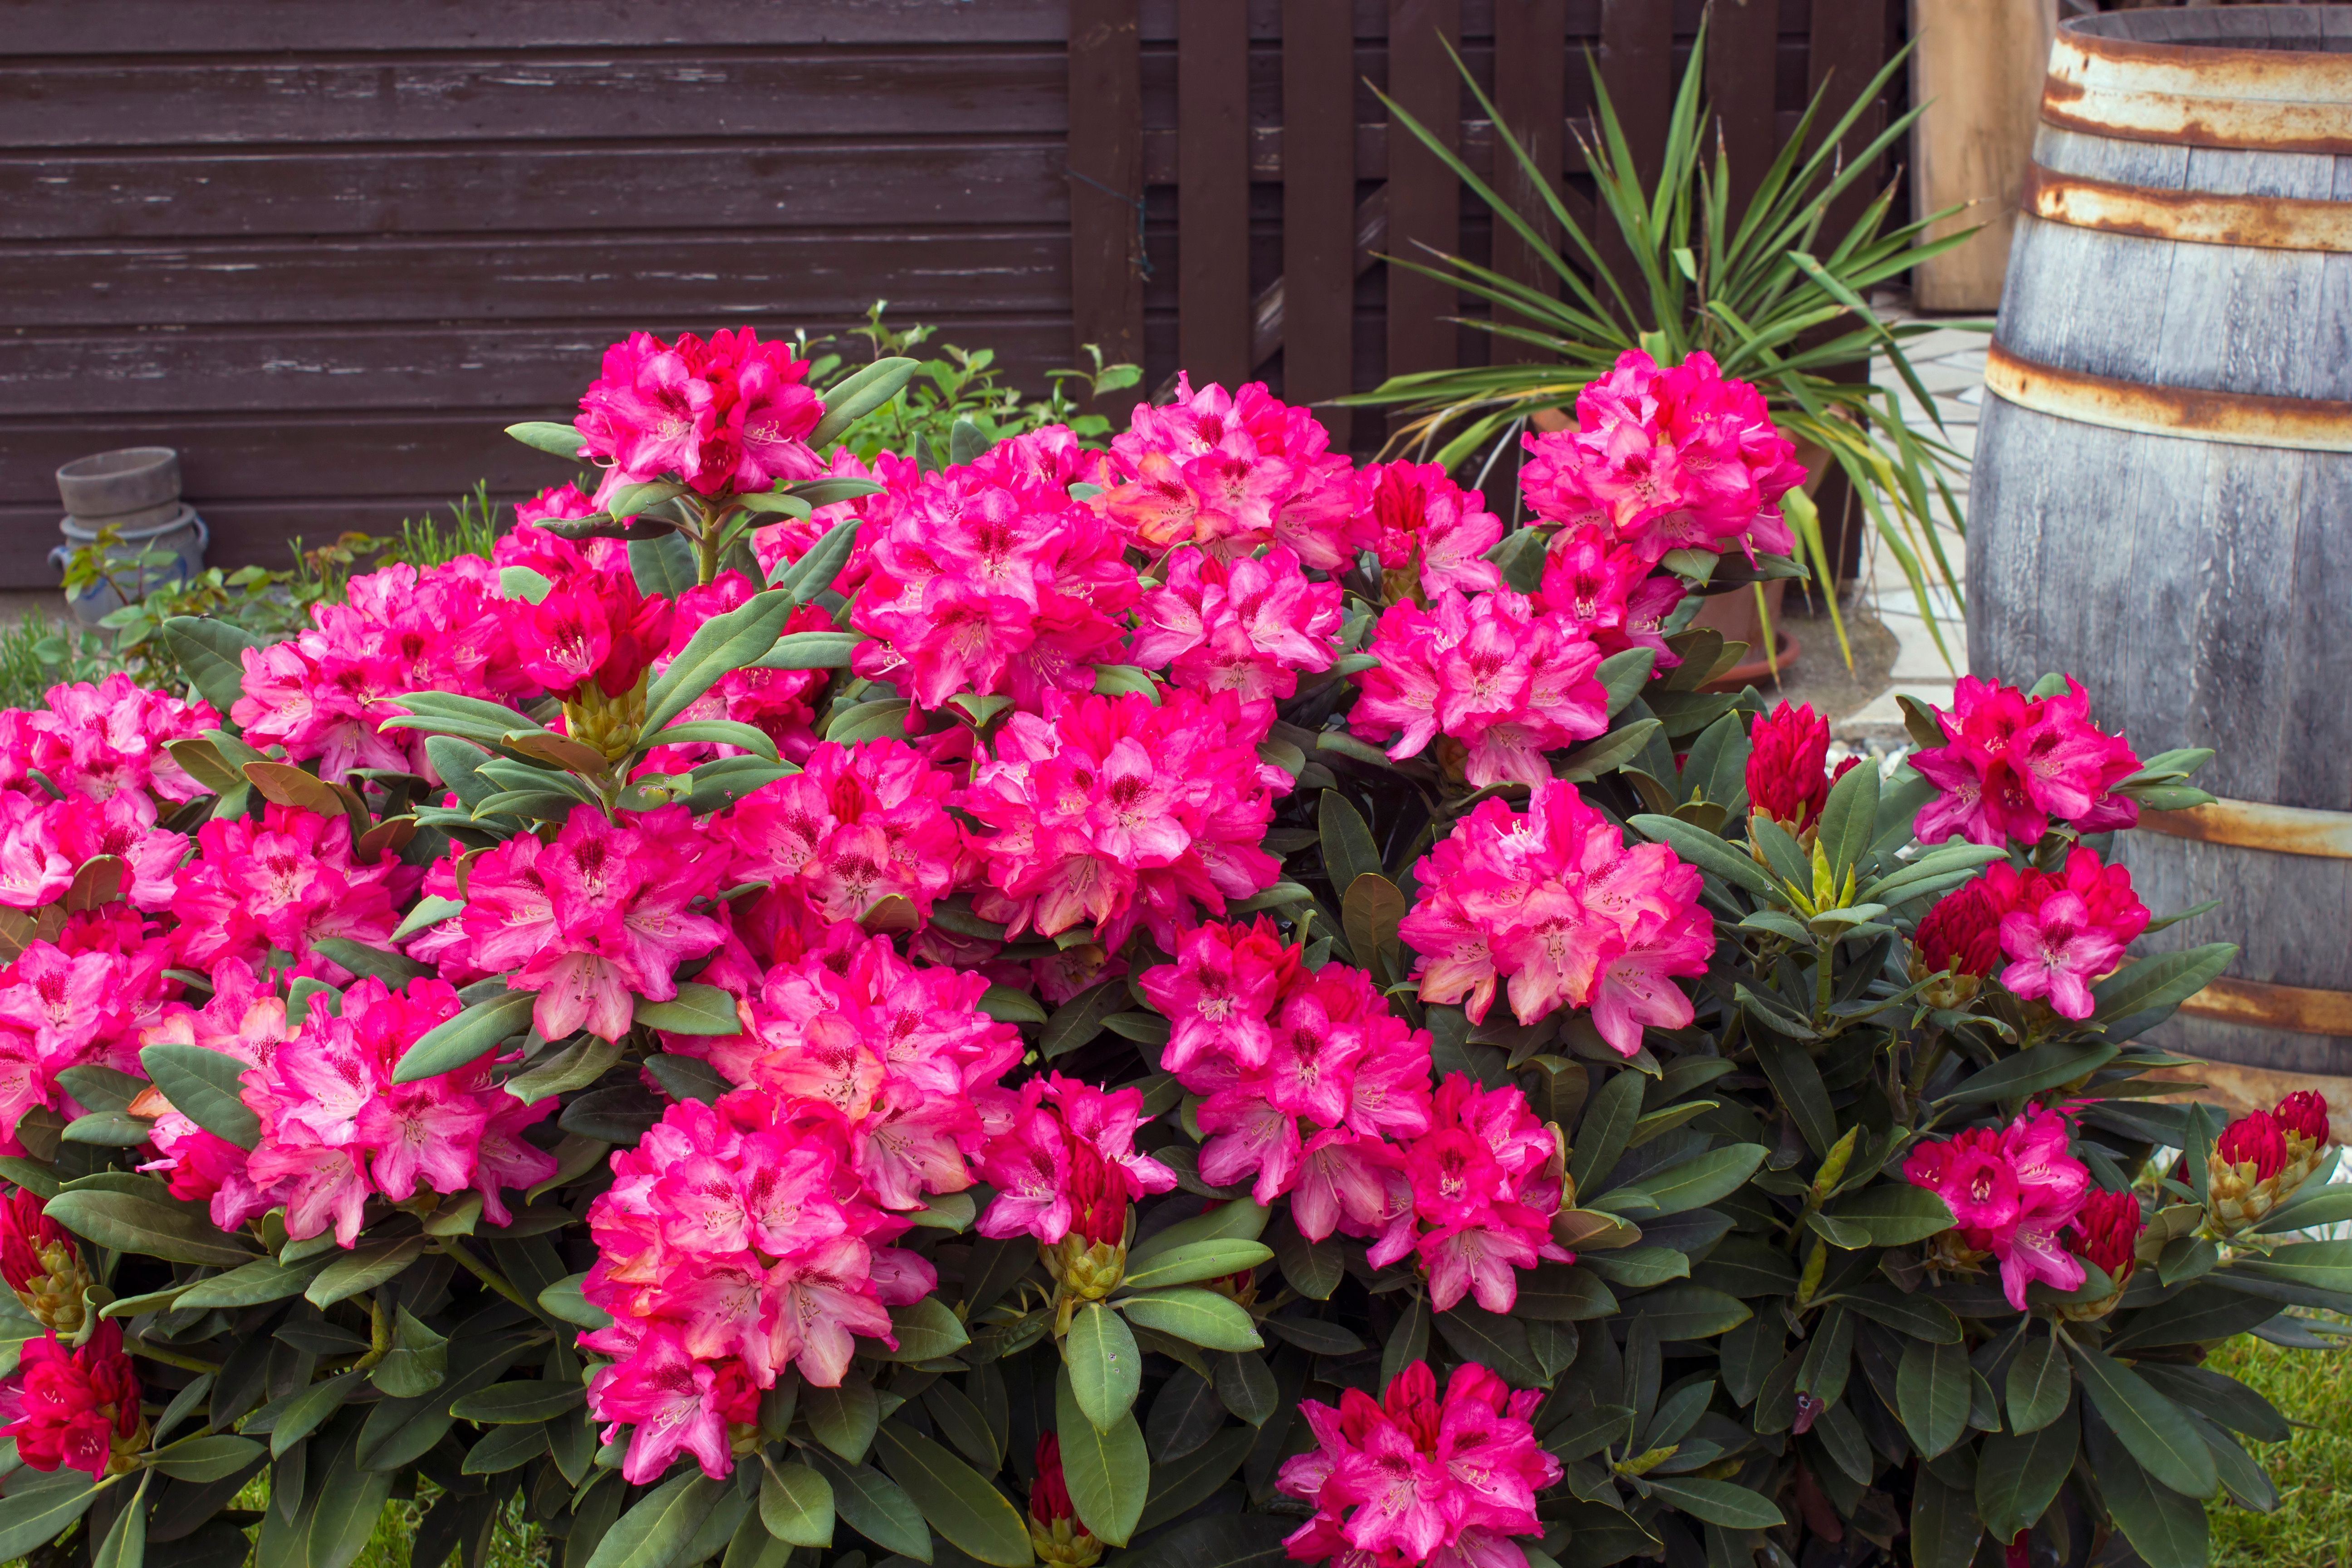 Rhododendron blüht in leuchtenden Farben. Tipp: Sträucher in verschiedenen Farben nebeneinander pflanzen.